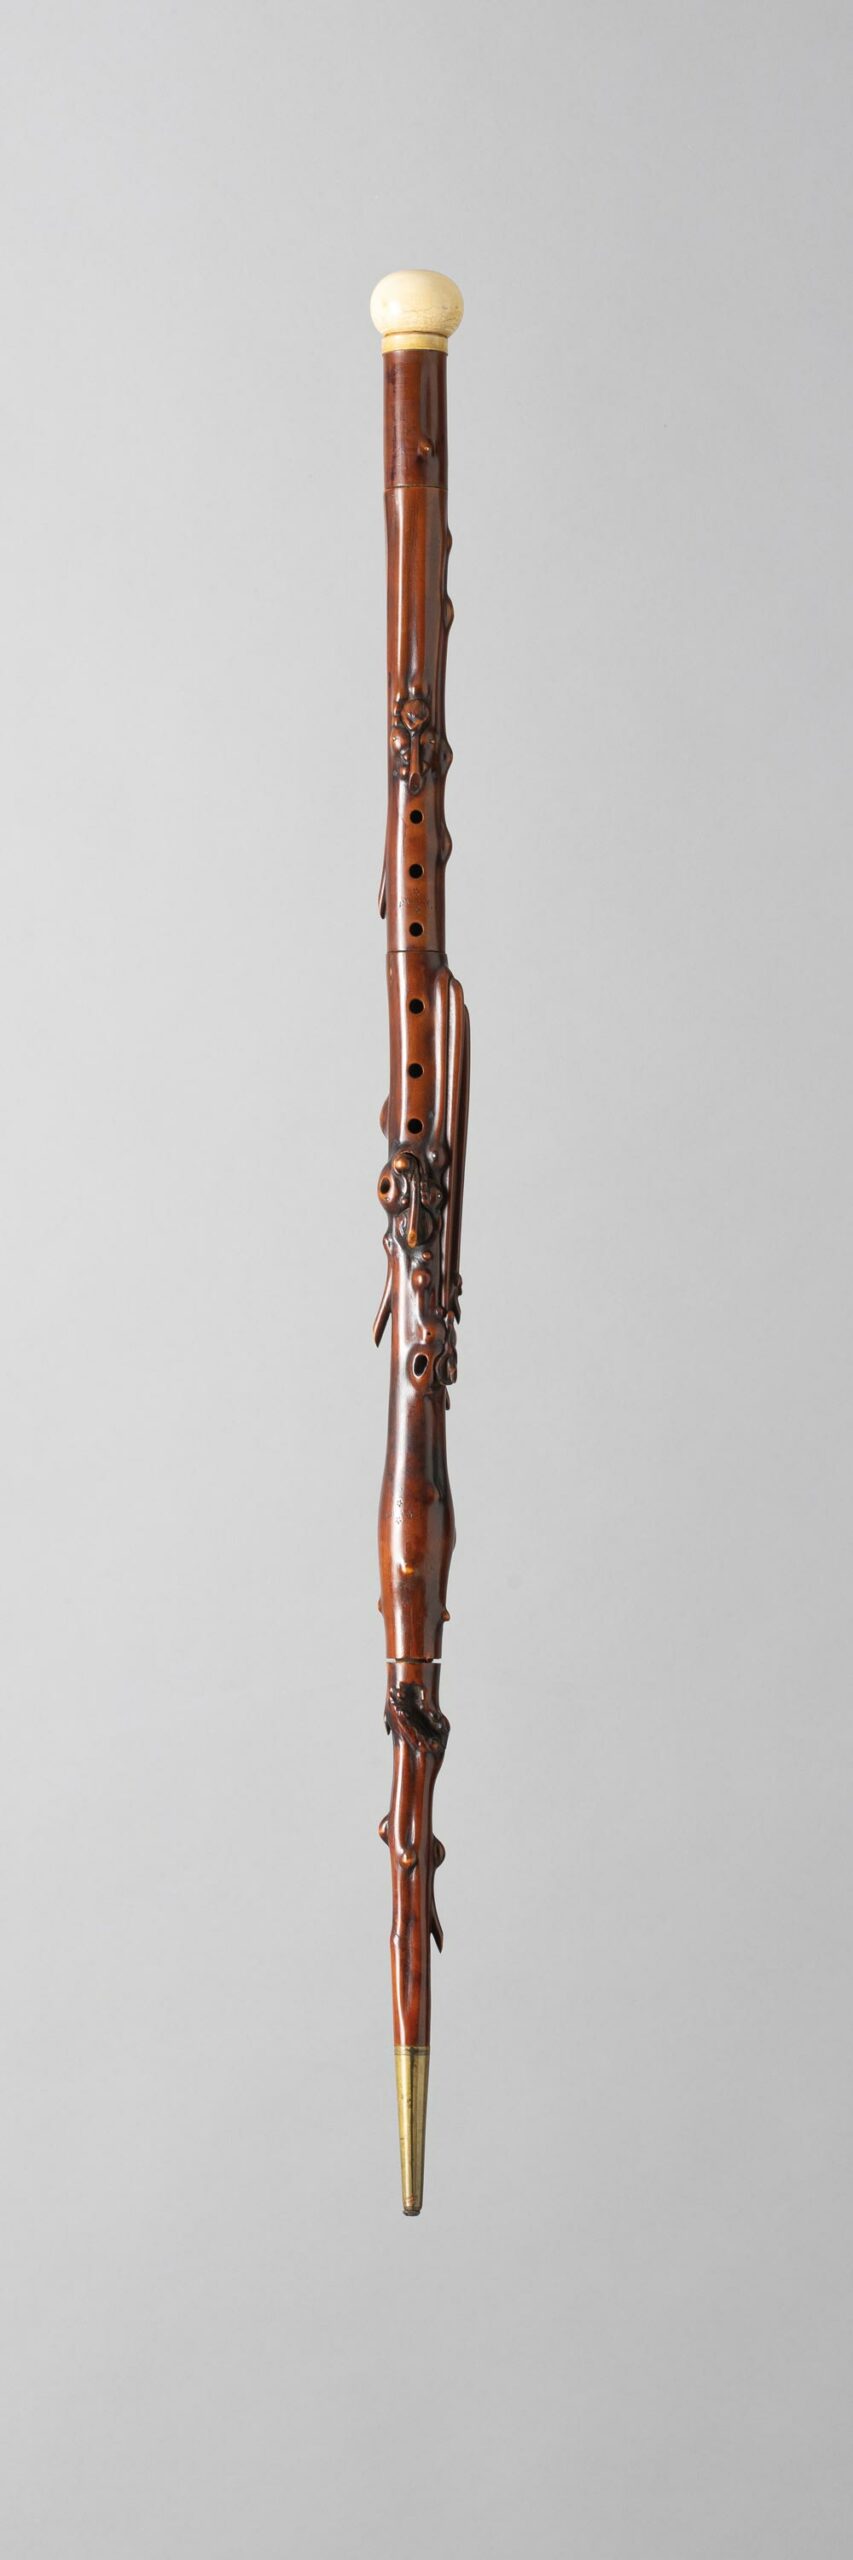 Canne-clarinette en bois fruitier sculpté, estampillée AMMANN Instrument mis en vente par Vichy Enchères le 5 novembre 2022 © C. Darbelet